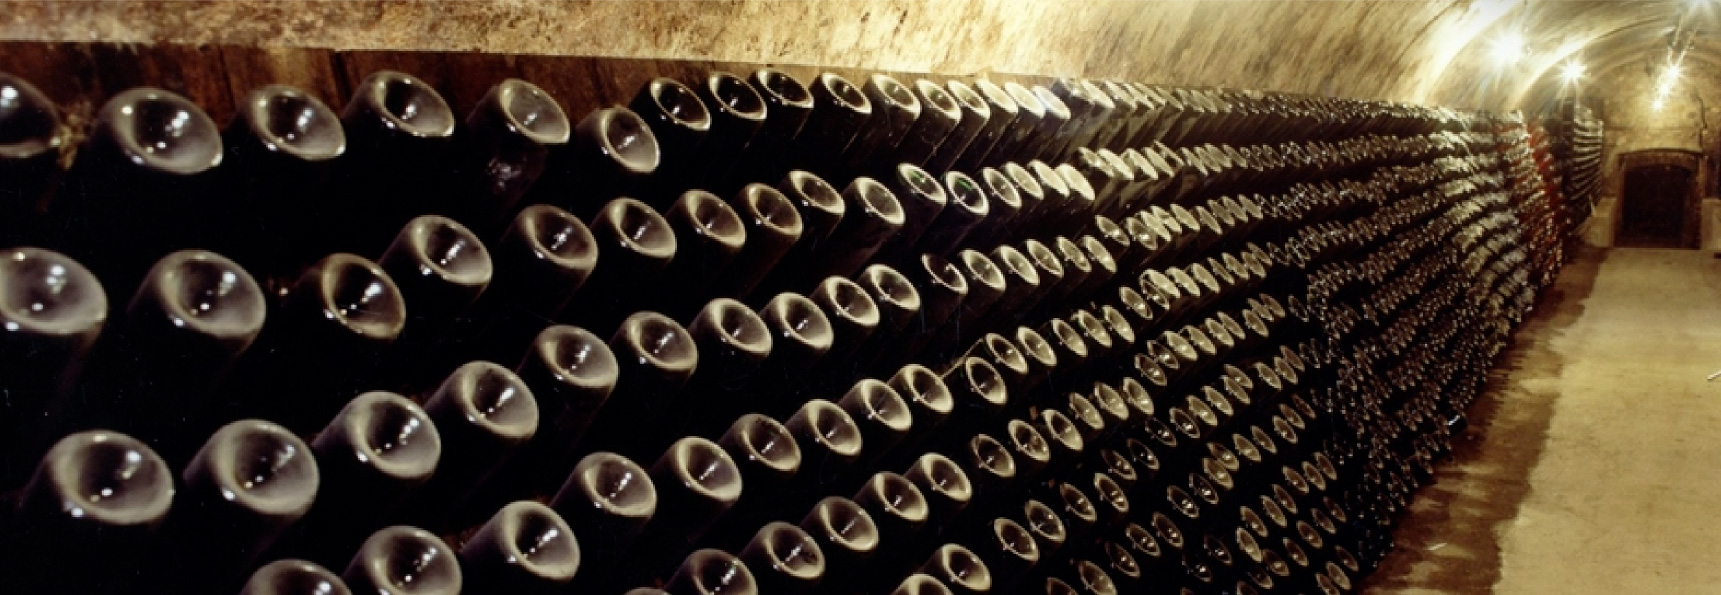 Vue sur une rangée de pupitre où repose des centaines de bouteille de champagne dans une cave voutée